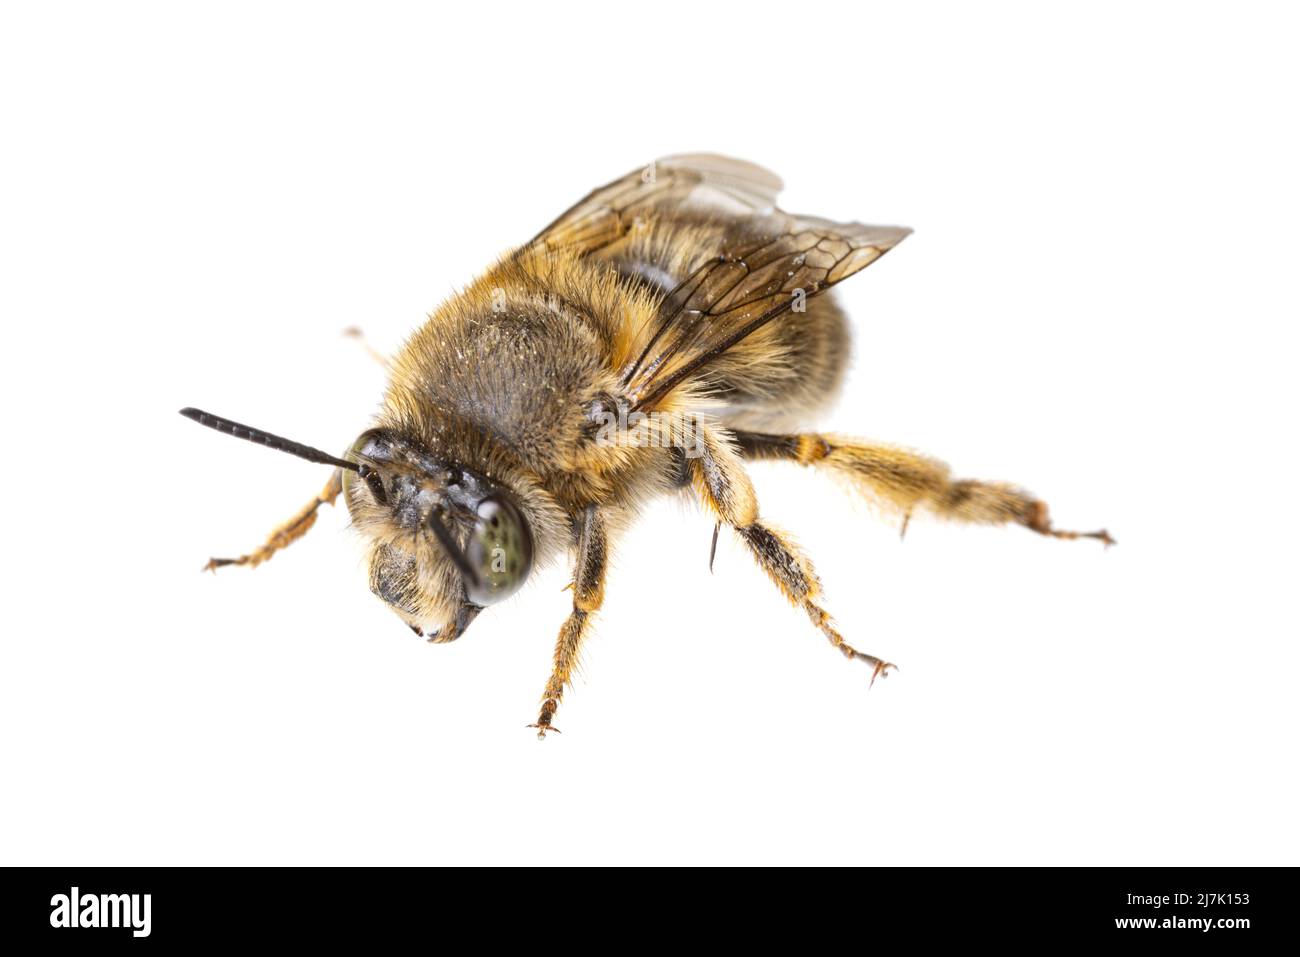 Insekten Europas - Bienen: Makro weiblicher Anthophora crinipes (Pelzbienen) isoliert auf weißem Hintergrund - Draufsicht Stockfoto